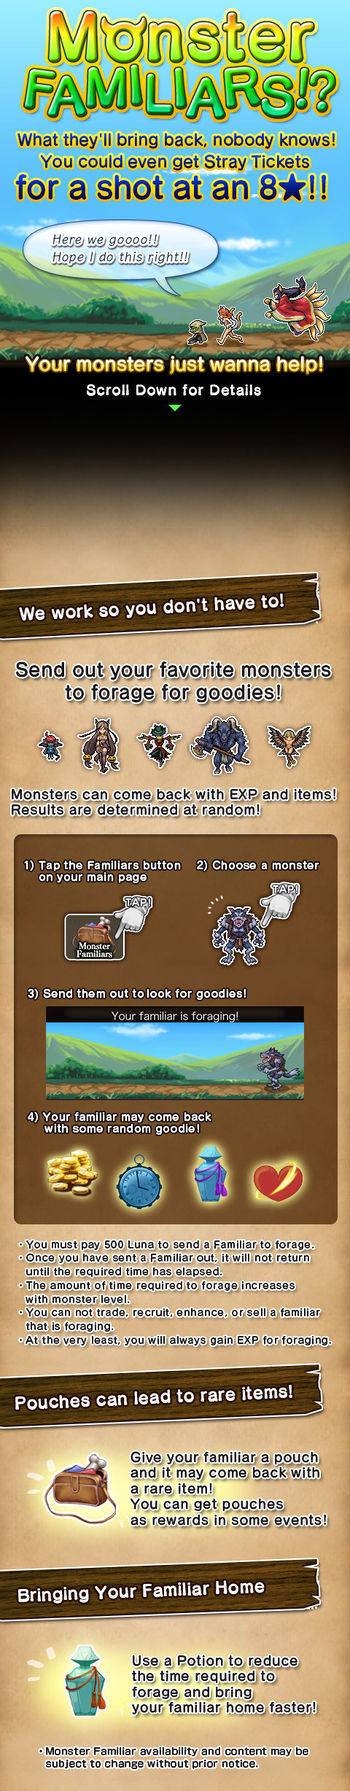 Monster Familiars 4 release.jpg